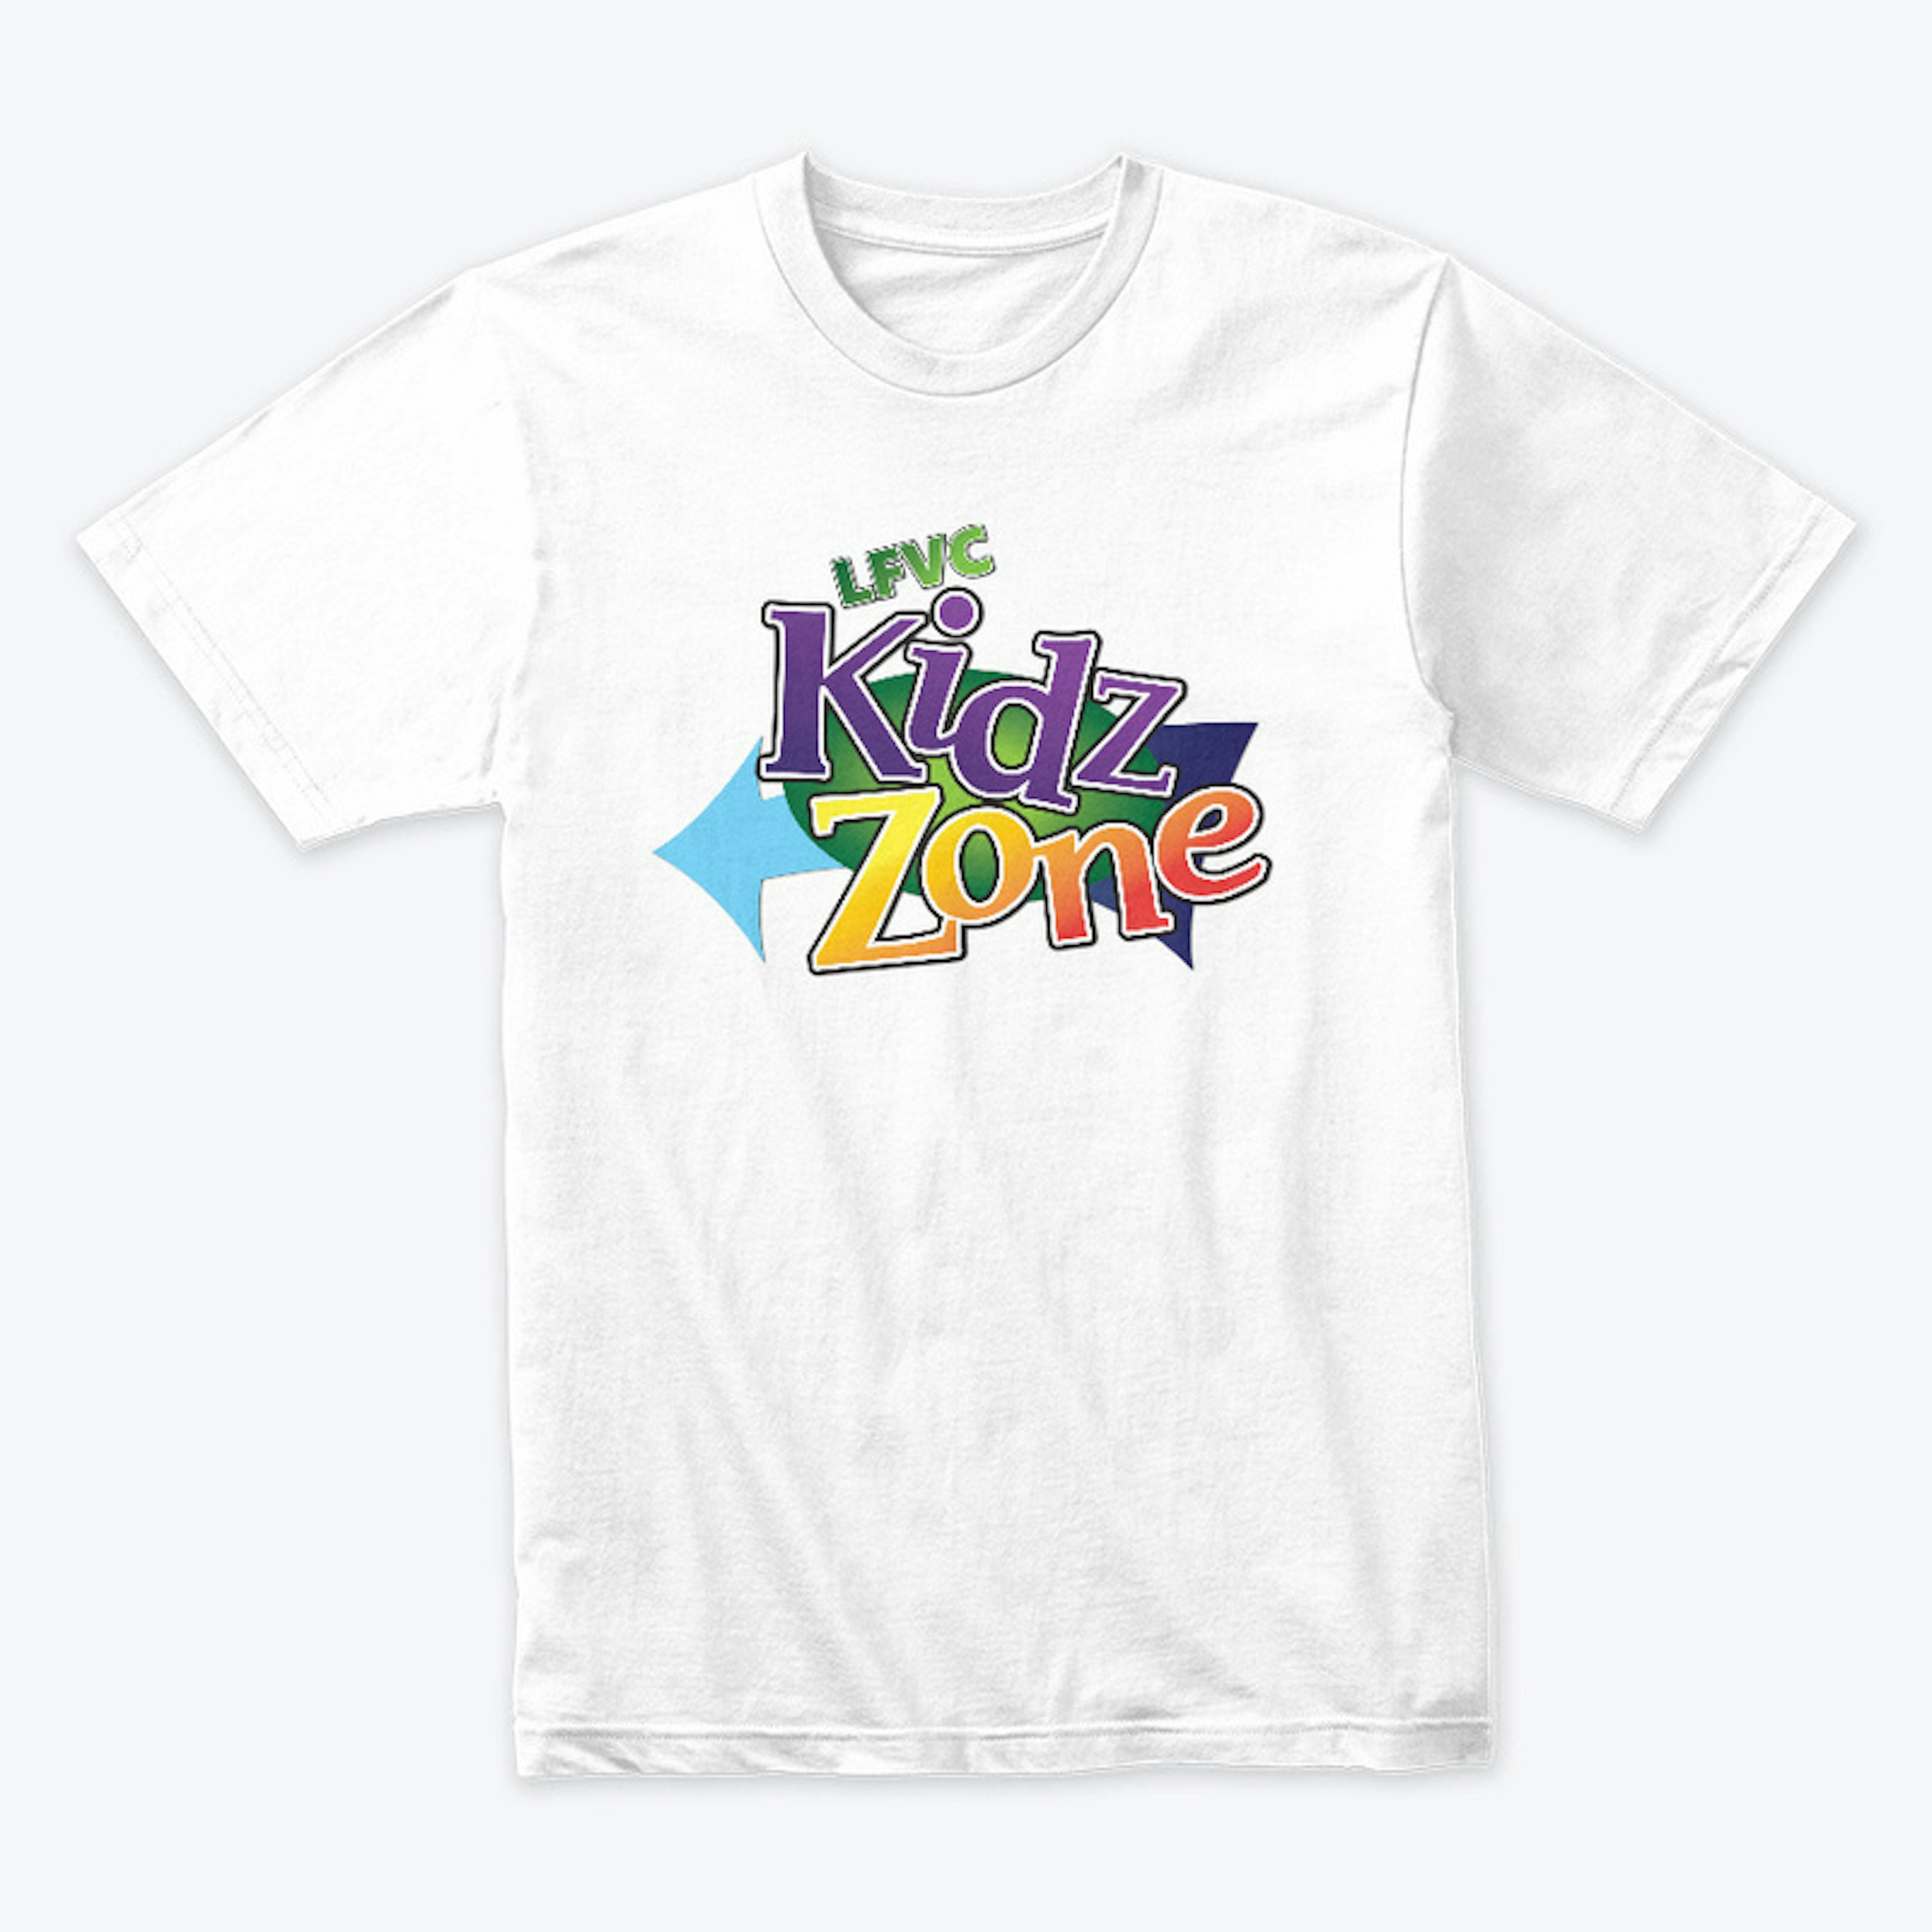 Kidz Zone Tee